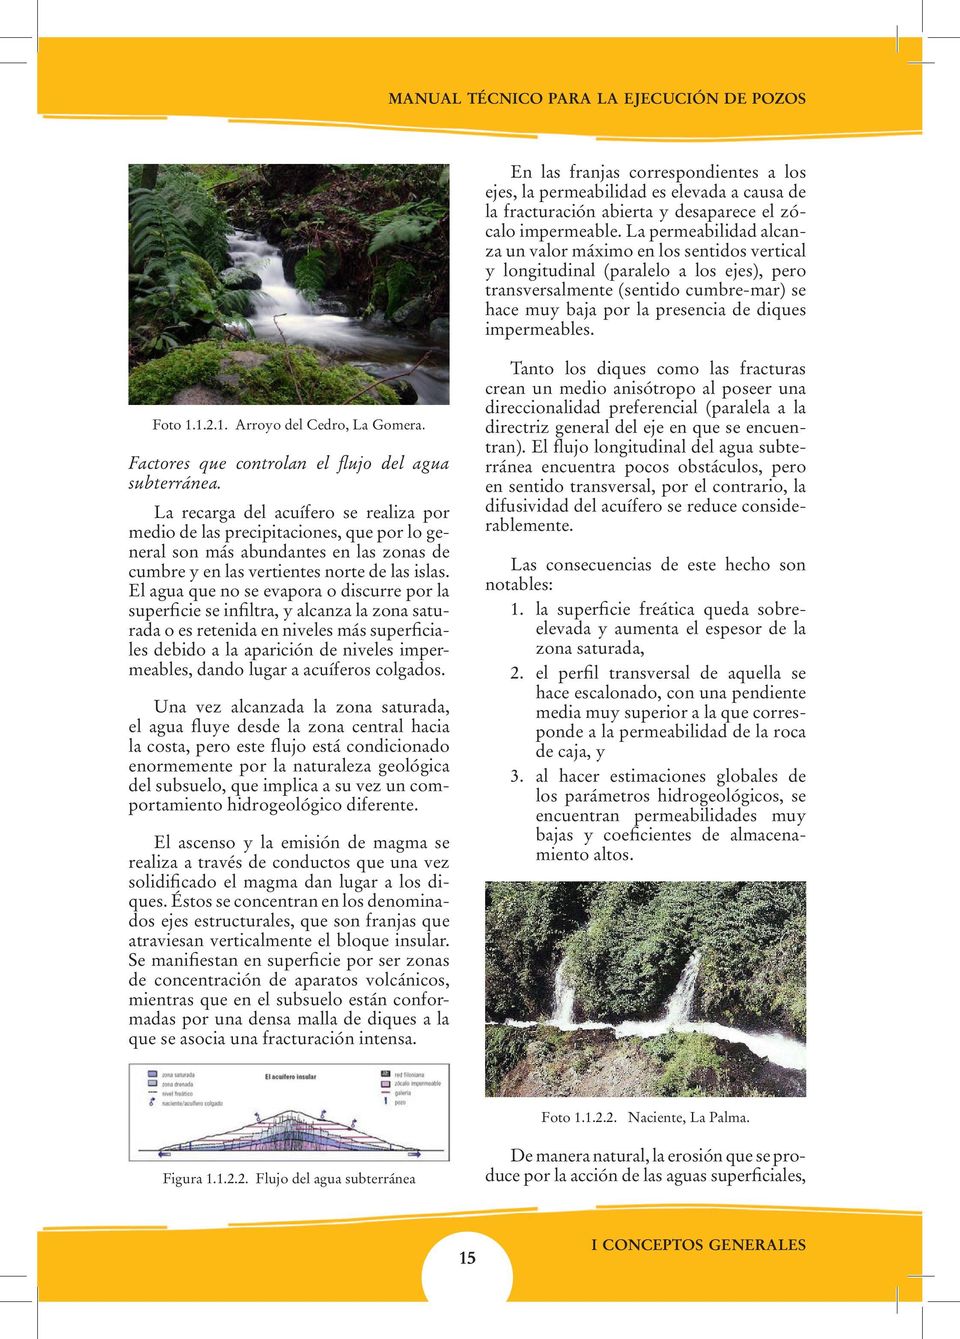 impermeables. Foto 1.1.2.1. Arroyo del Cedro, La Gomera. Factores que controlan el flujo del agua subterránea.